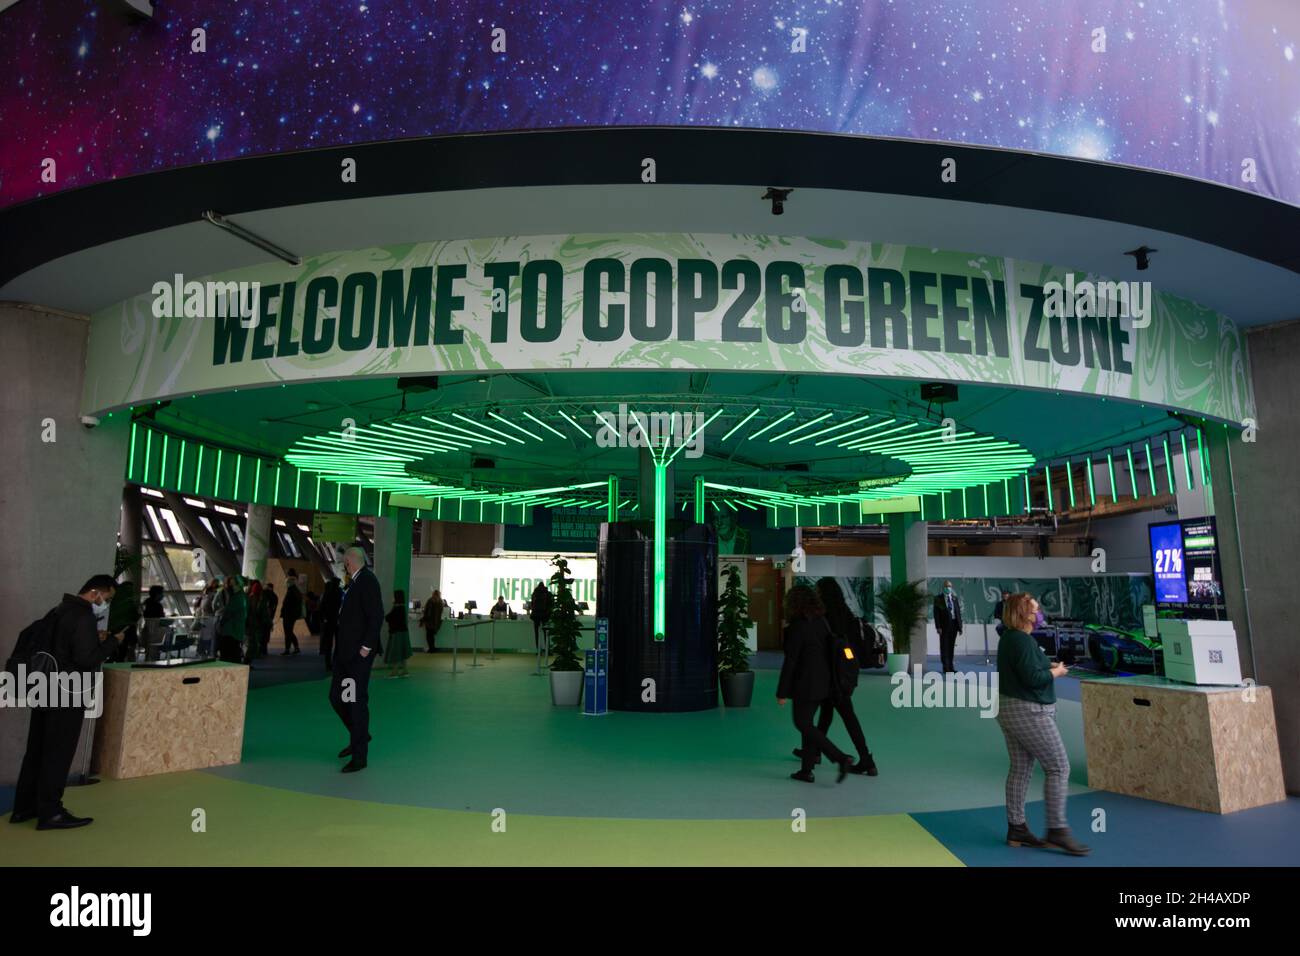 Glasgow, Royaume-Uni.Intérieur de la zone verte de la 26e Conférence des Nations Unies sur les changements climatiques, connue sous le nom de COP26, à Glasgow, au Royaume-Uni, le 1er novembre 2021.Photo: Jeremy Sutton-Hibbert/Alamy Live News. Banque D'Images